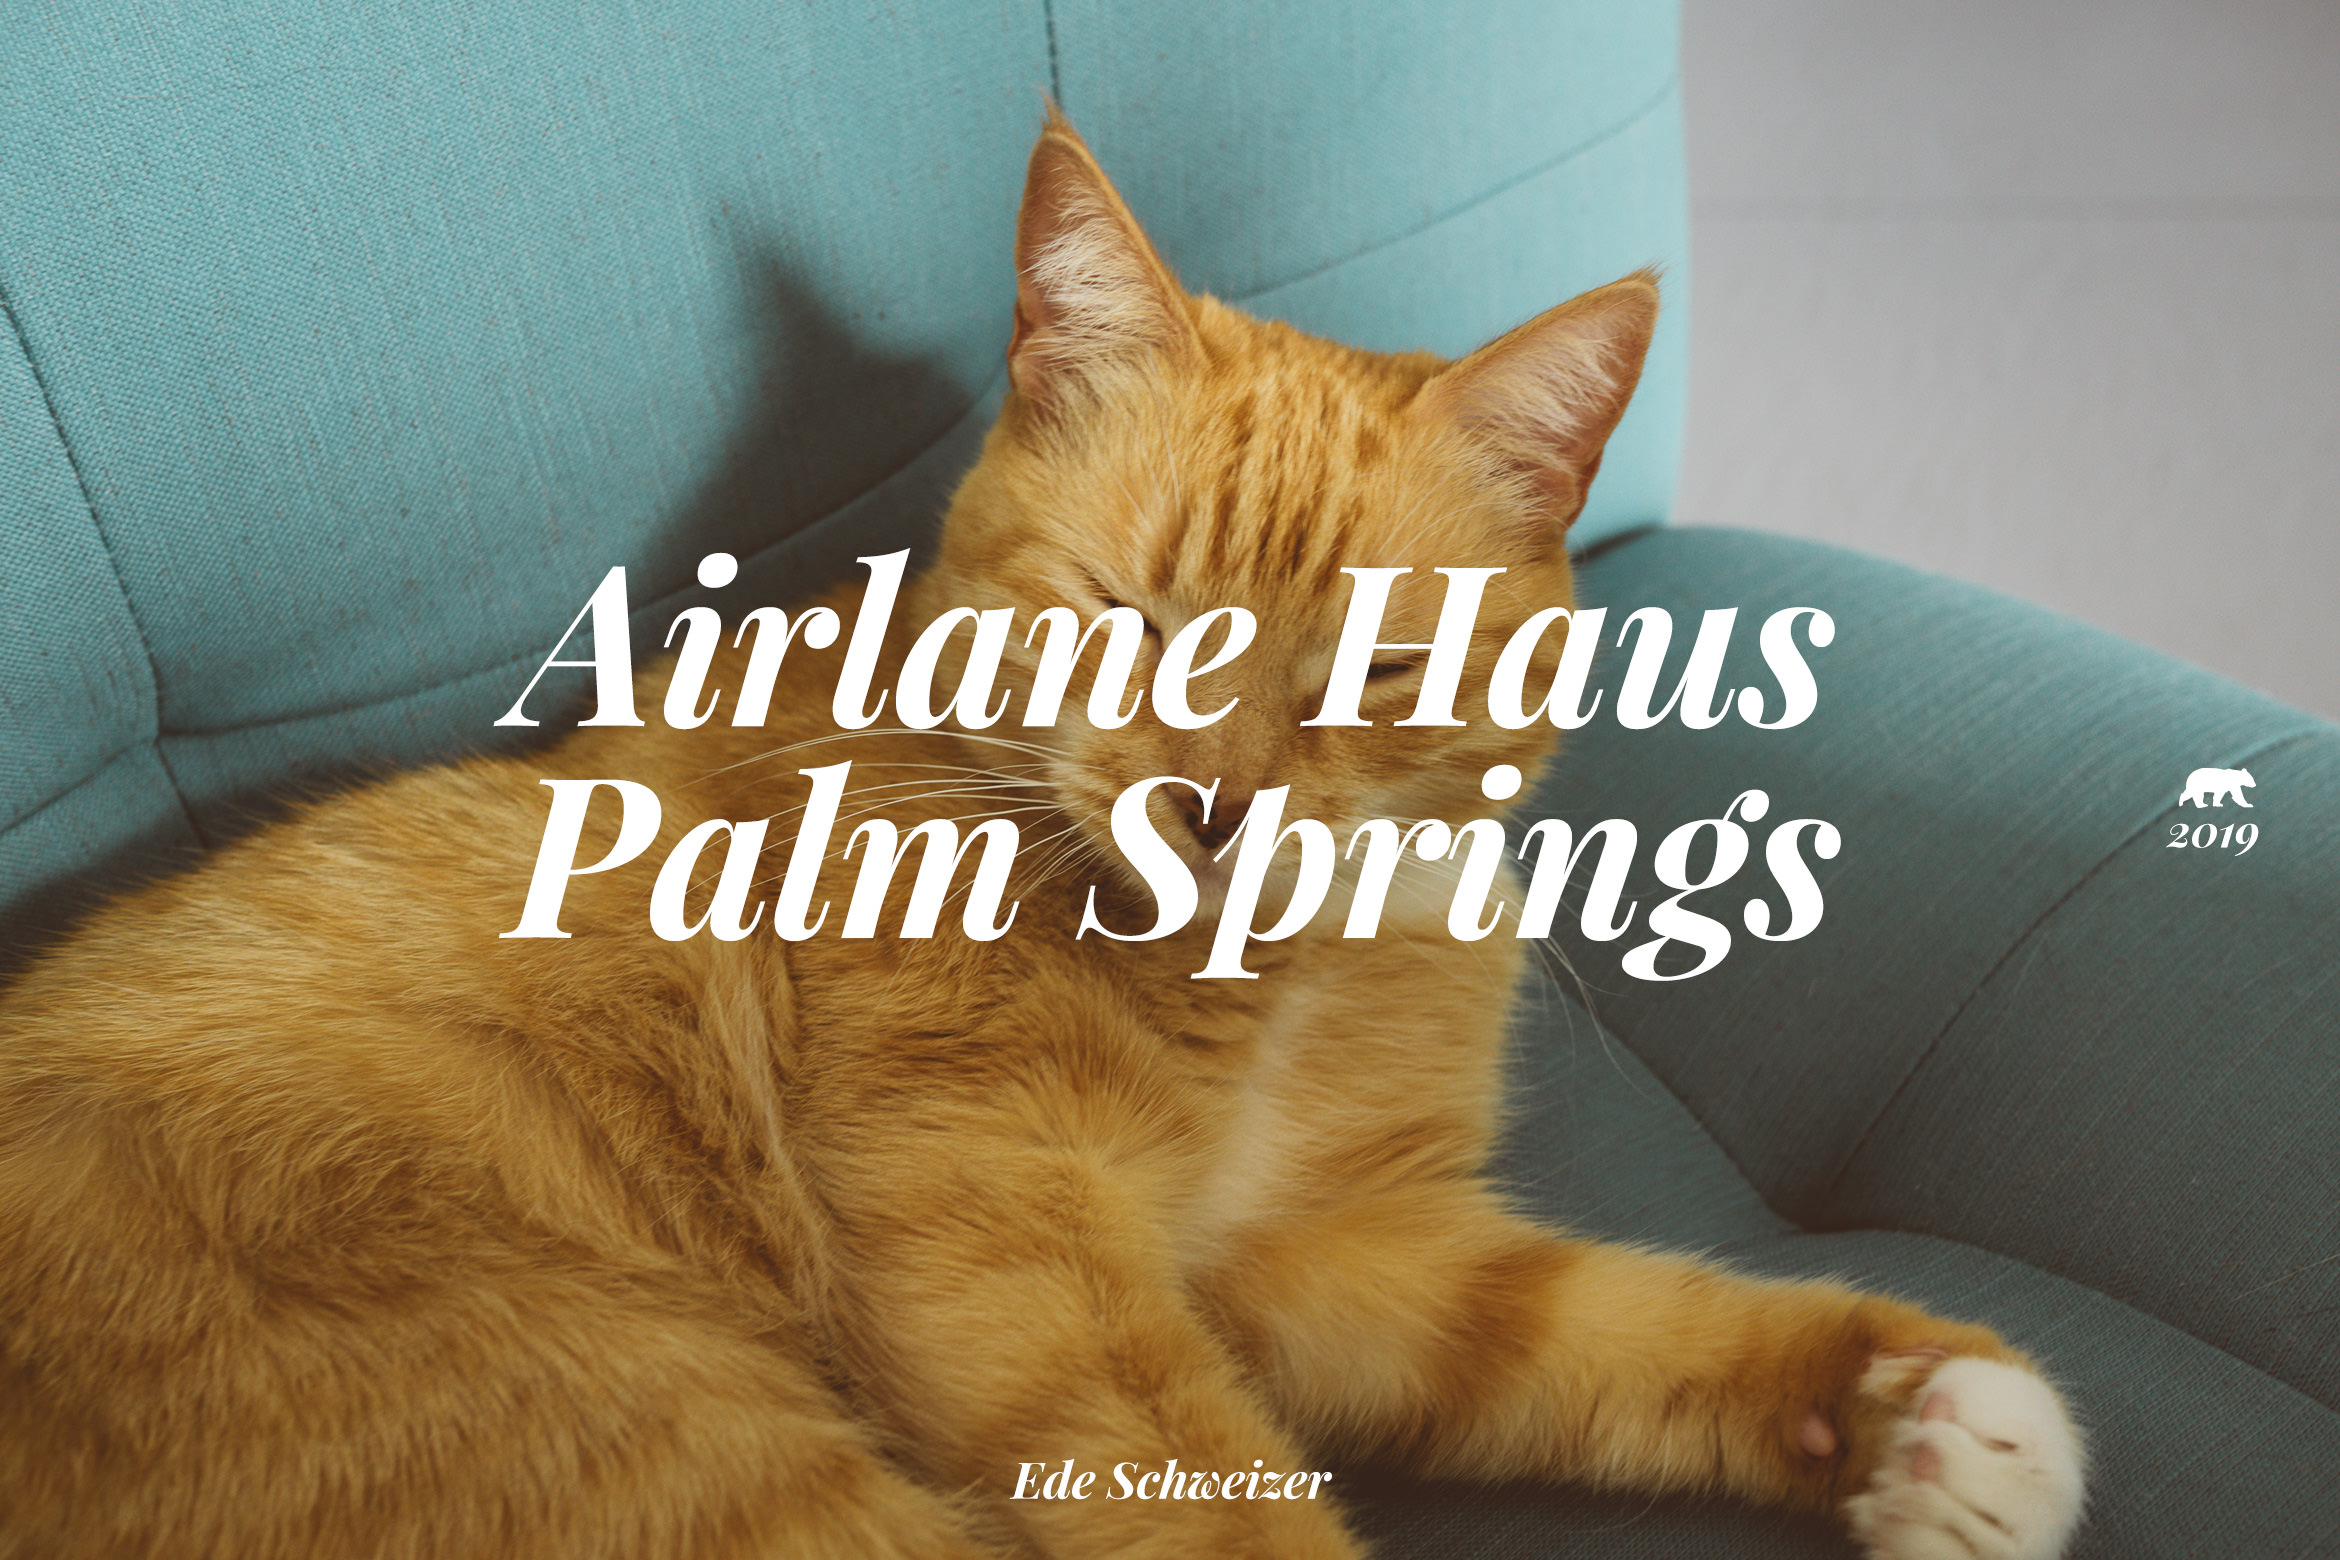 palmsprings_airlanehaus